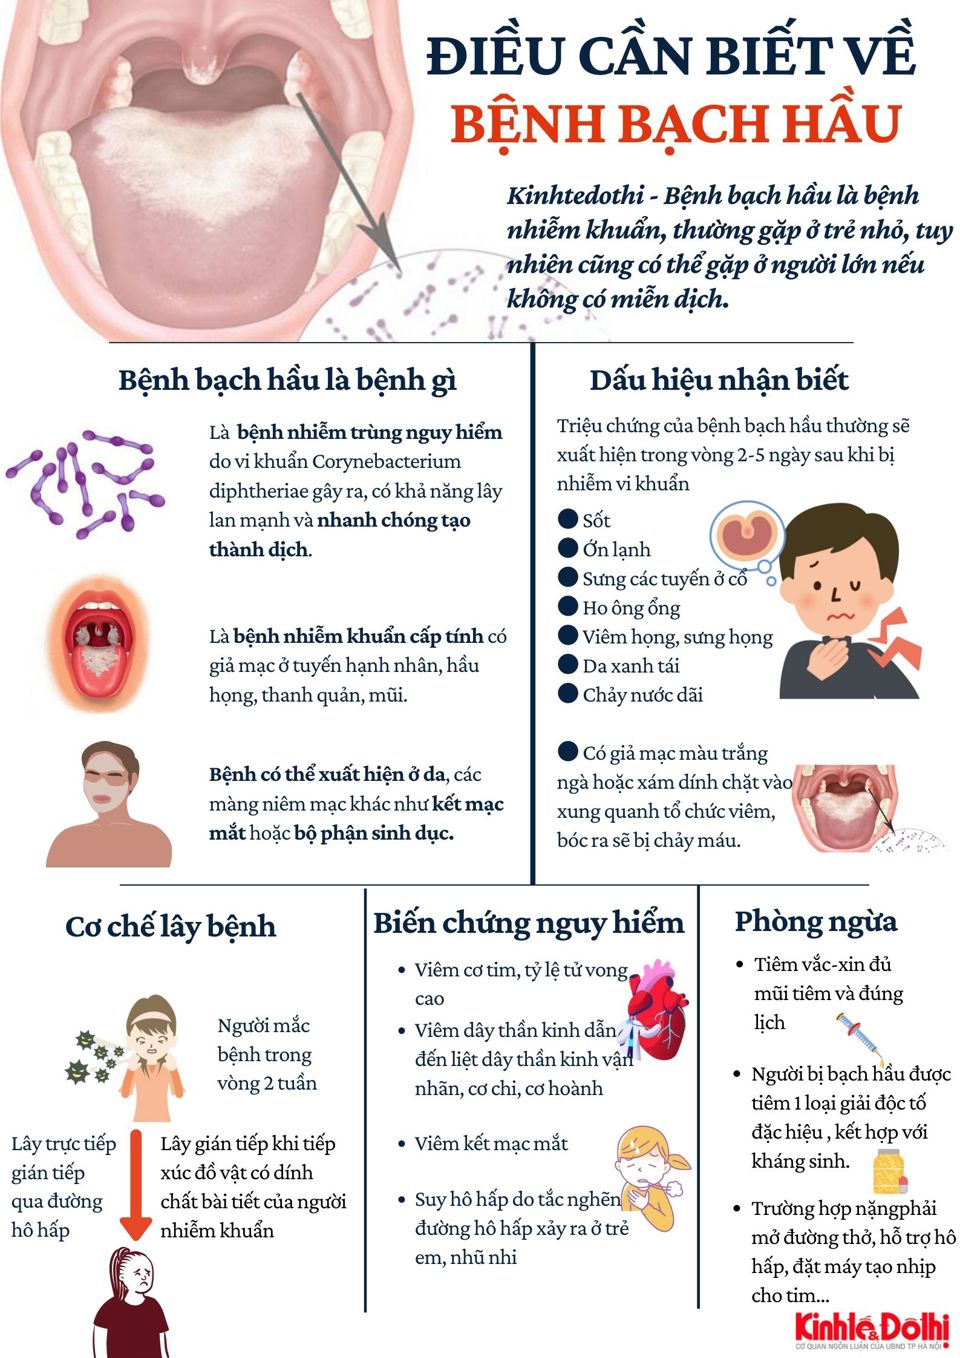 [Infographic] Điều cần biết về bệnh bạch hầu - Ảnh 1